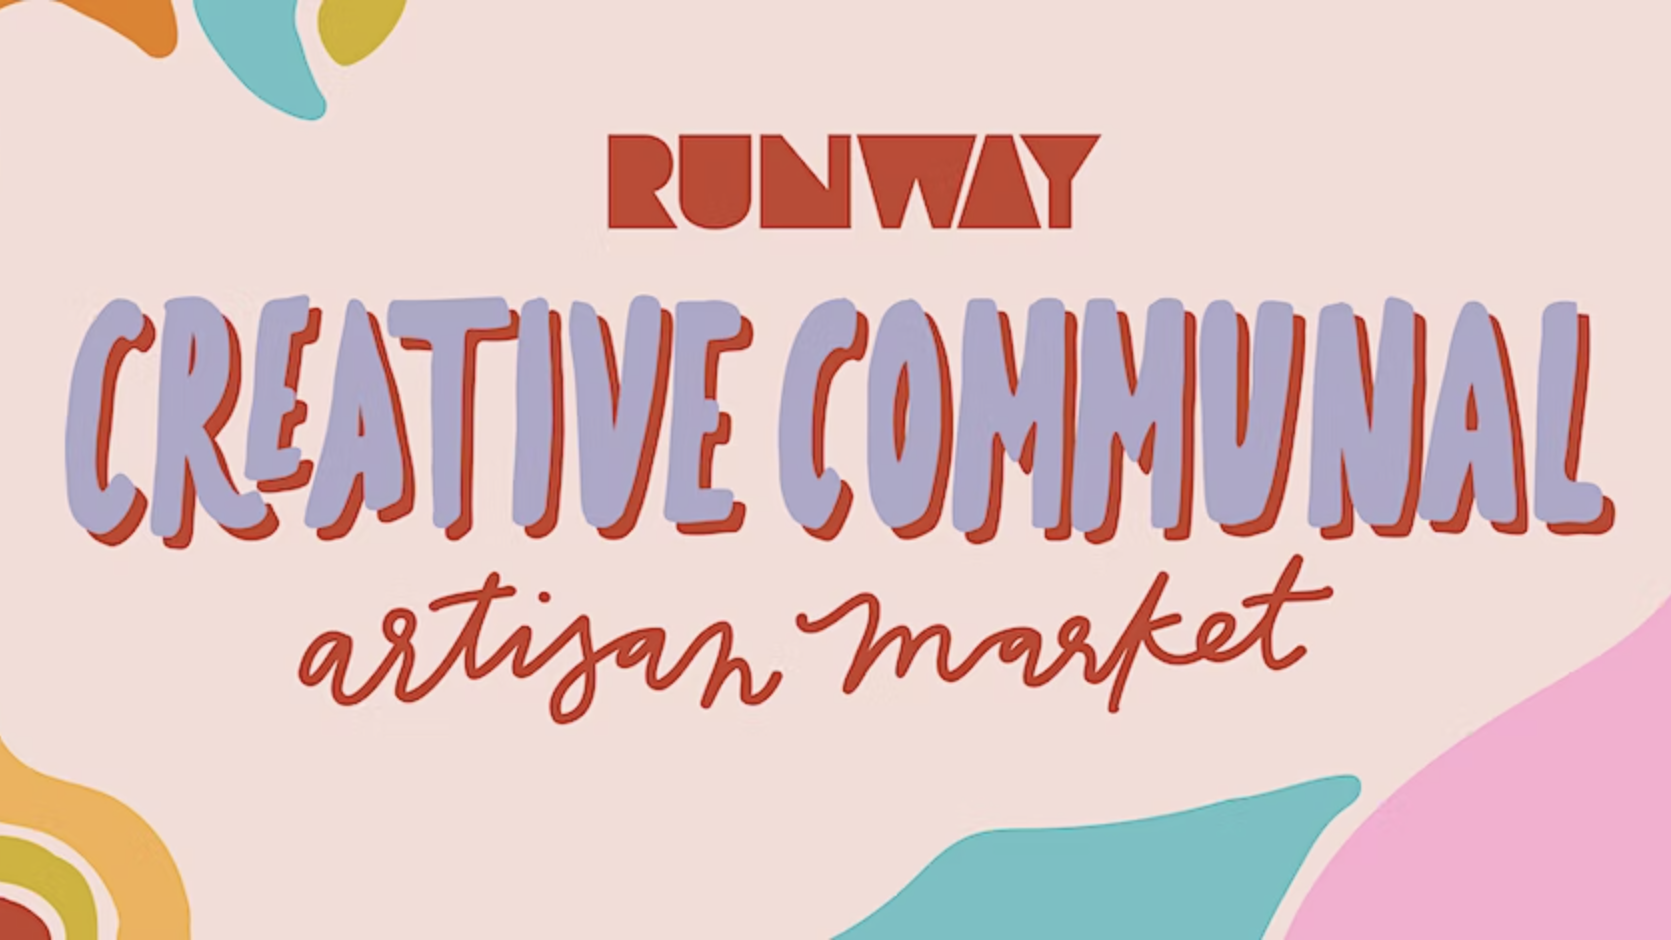 Creative Communal Artisan Market